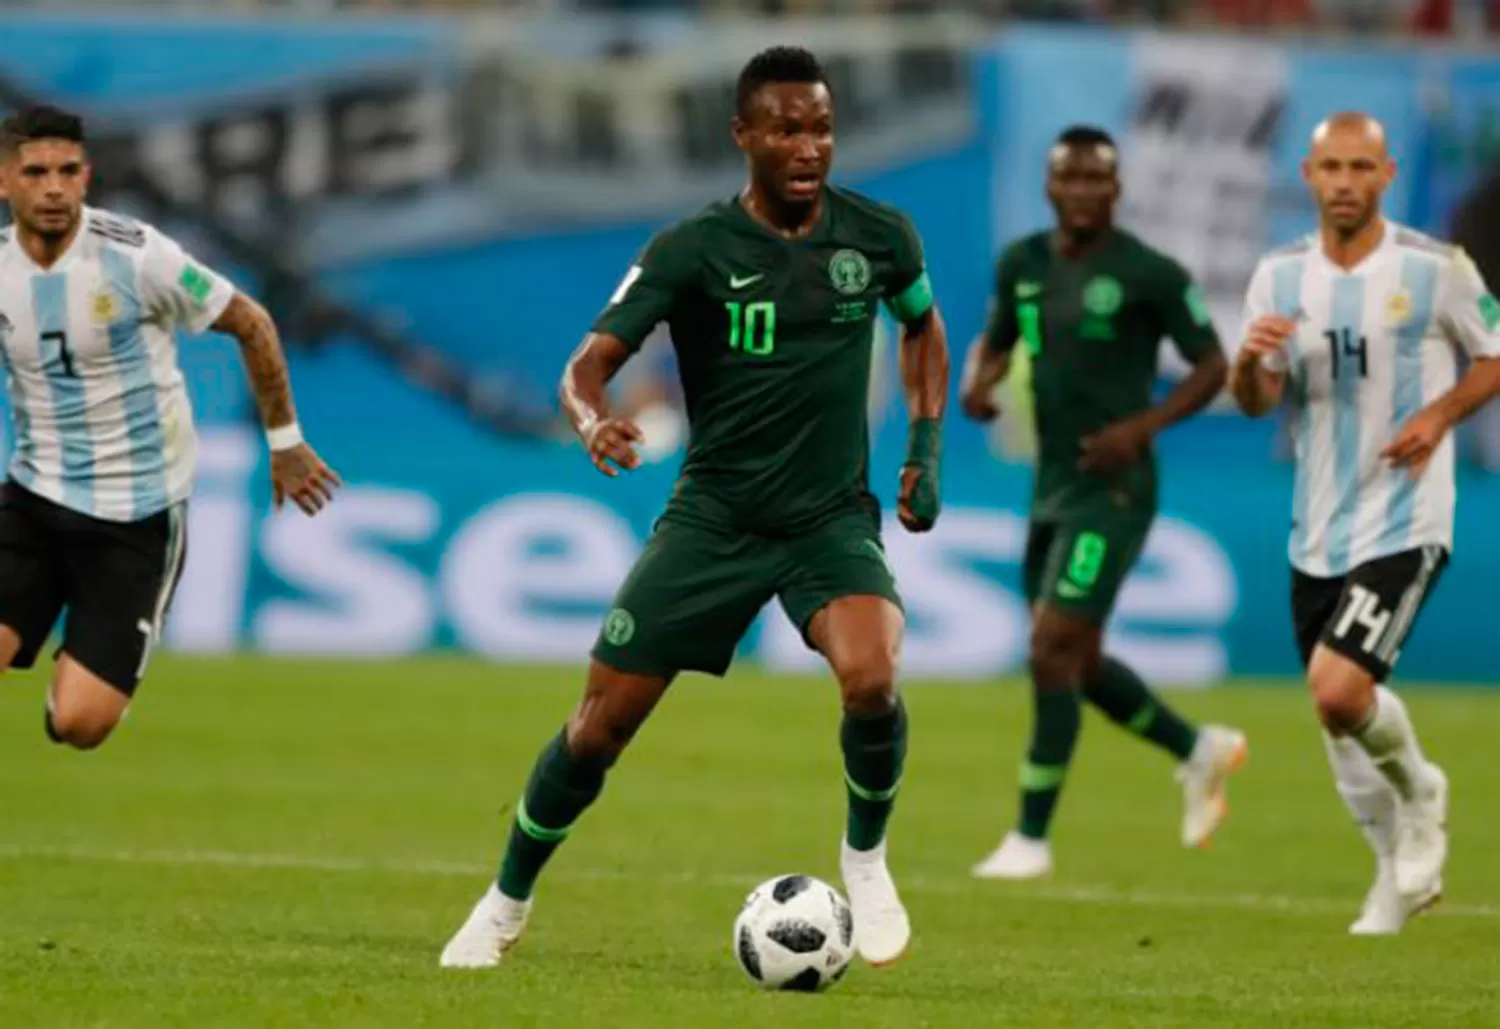 CAPITÁN NIGERIANO. John Obi Mikel jugó contra Argentina a pesar del secuestro de su padre. (REUTERS)